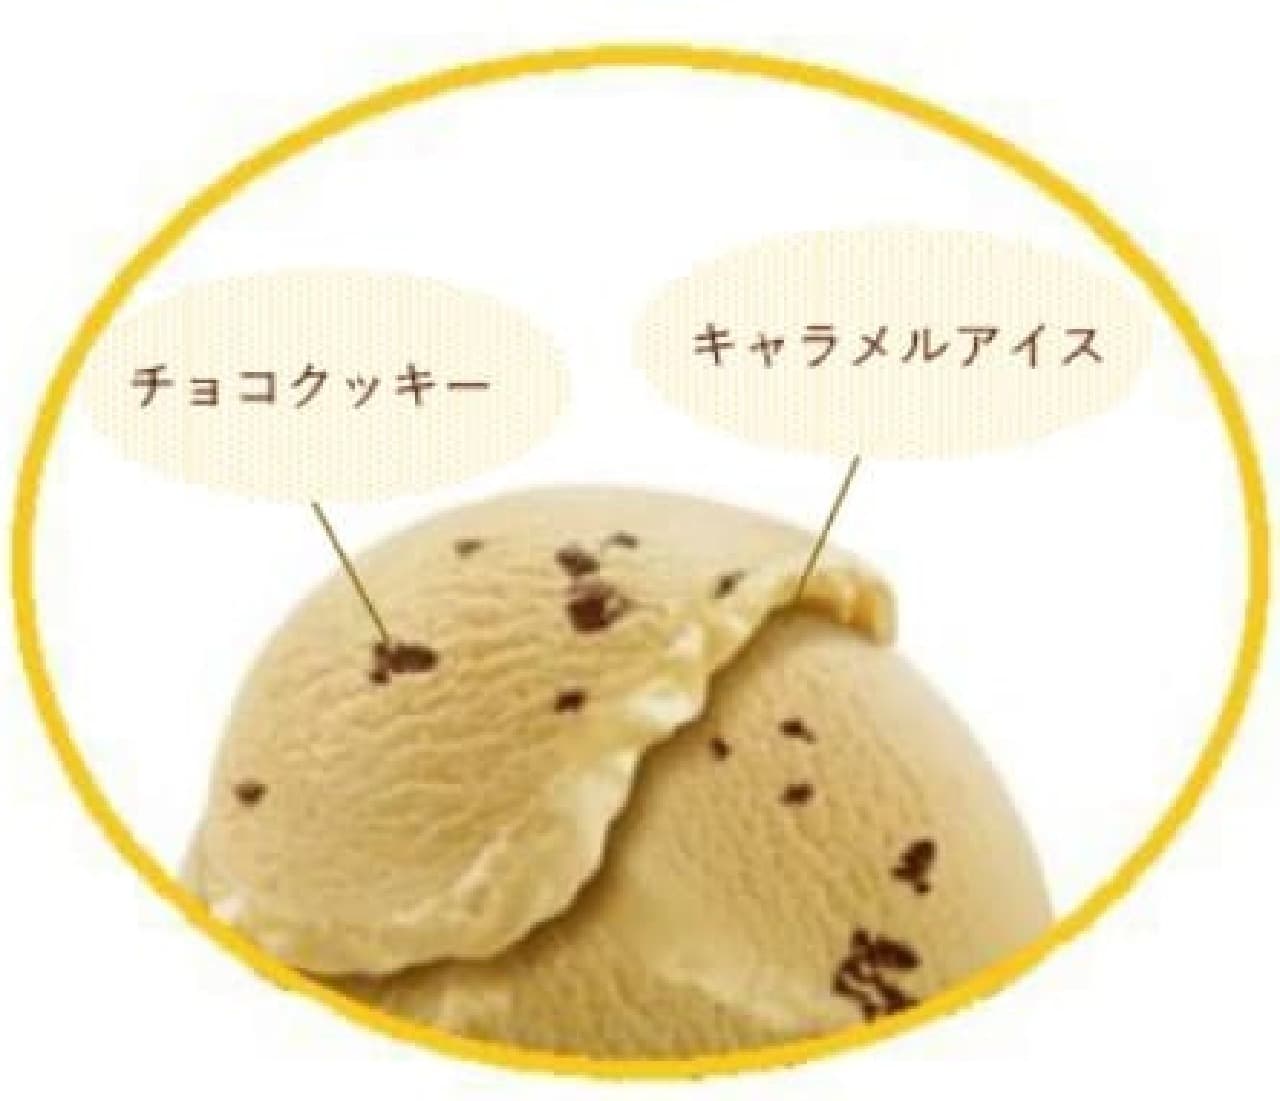 Meiji Essel Supercup Caramel Chocolate Cookie